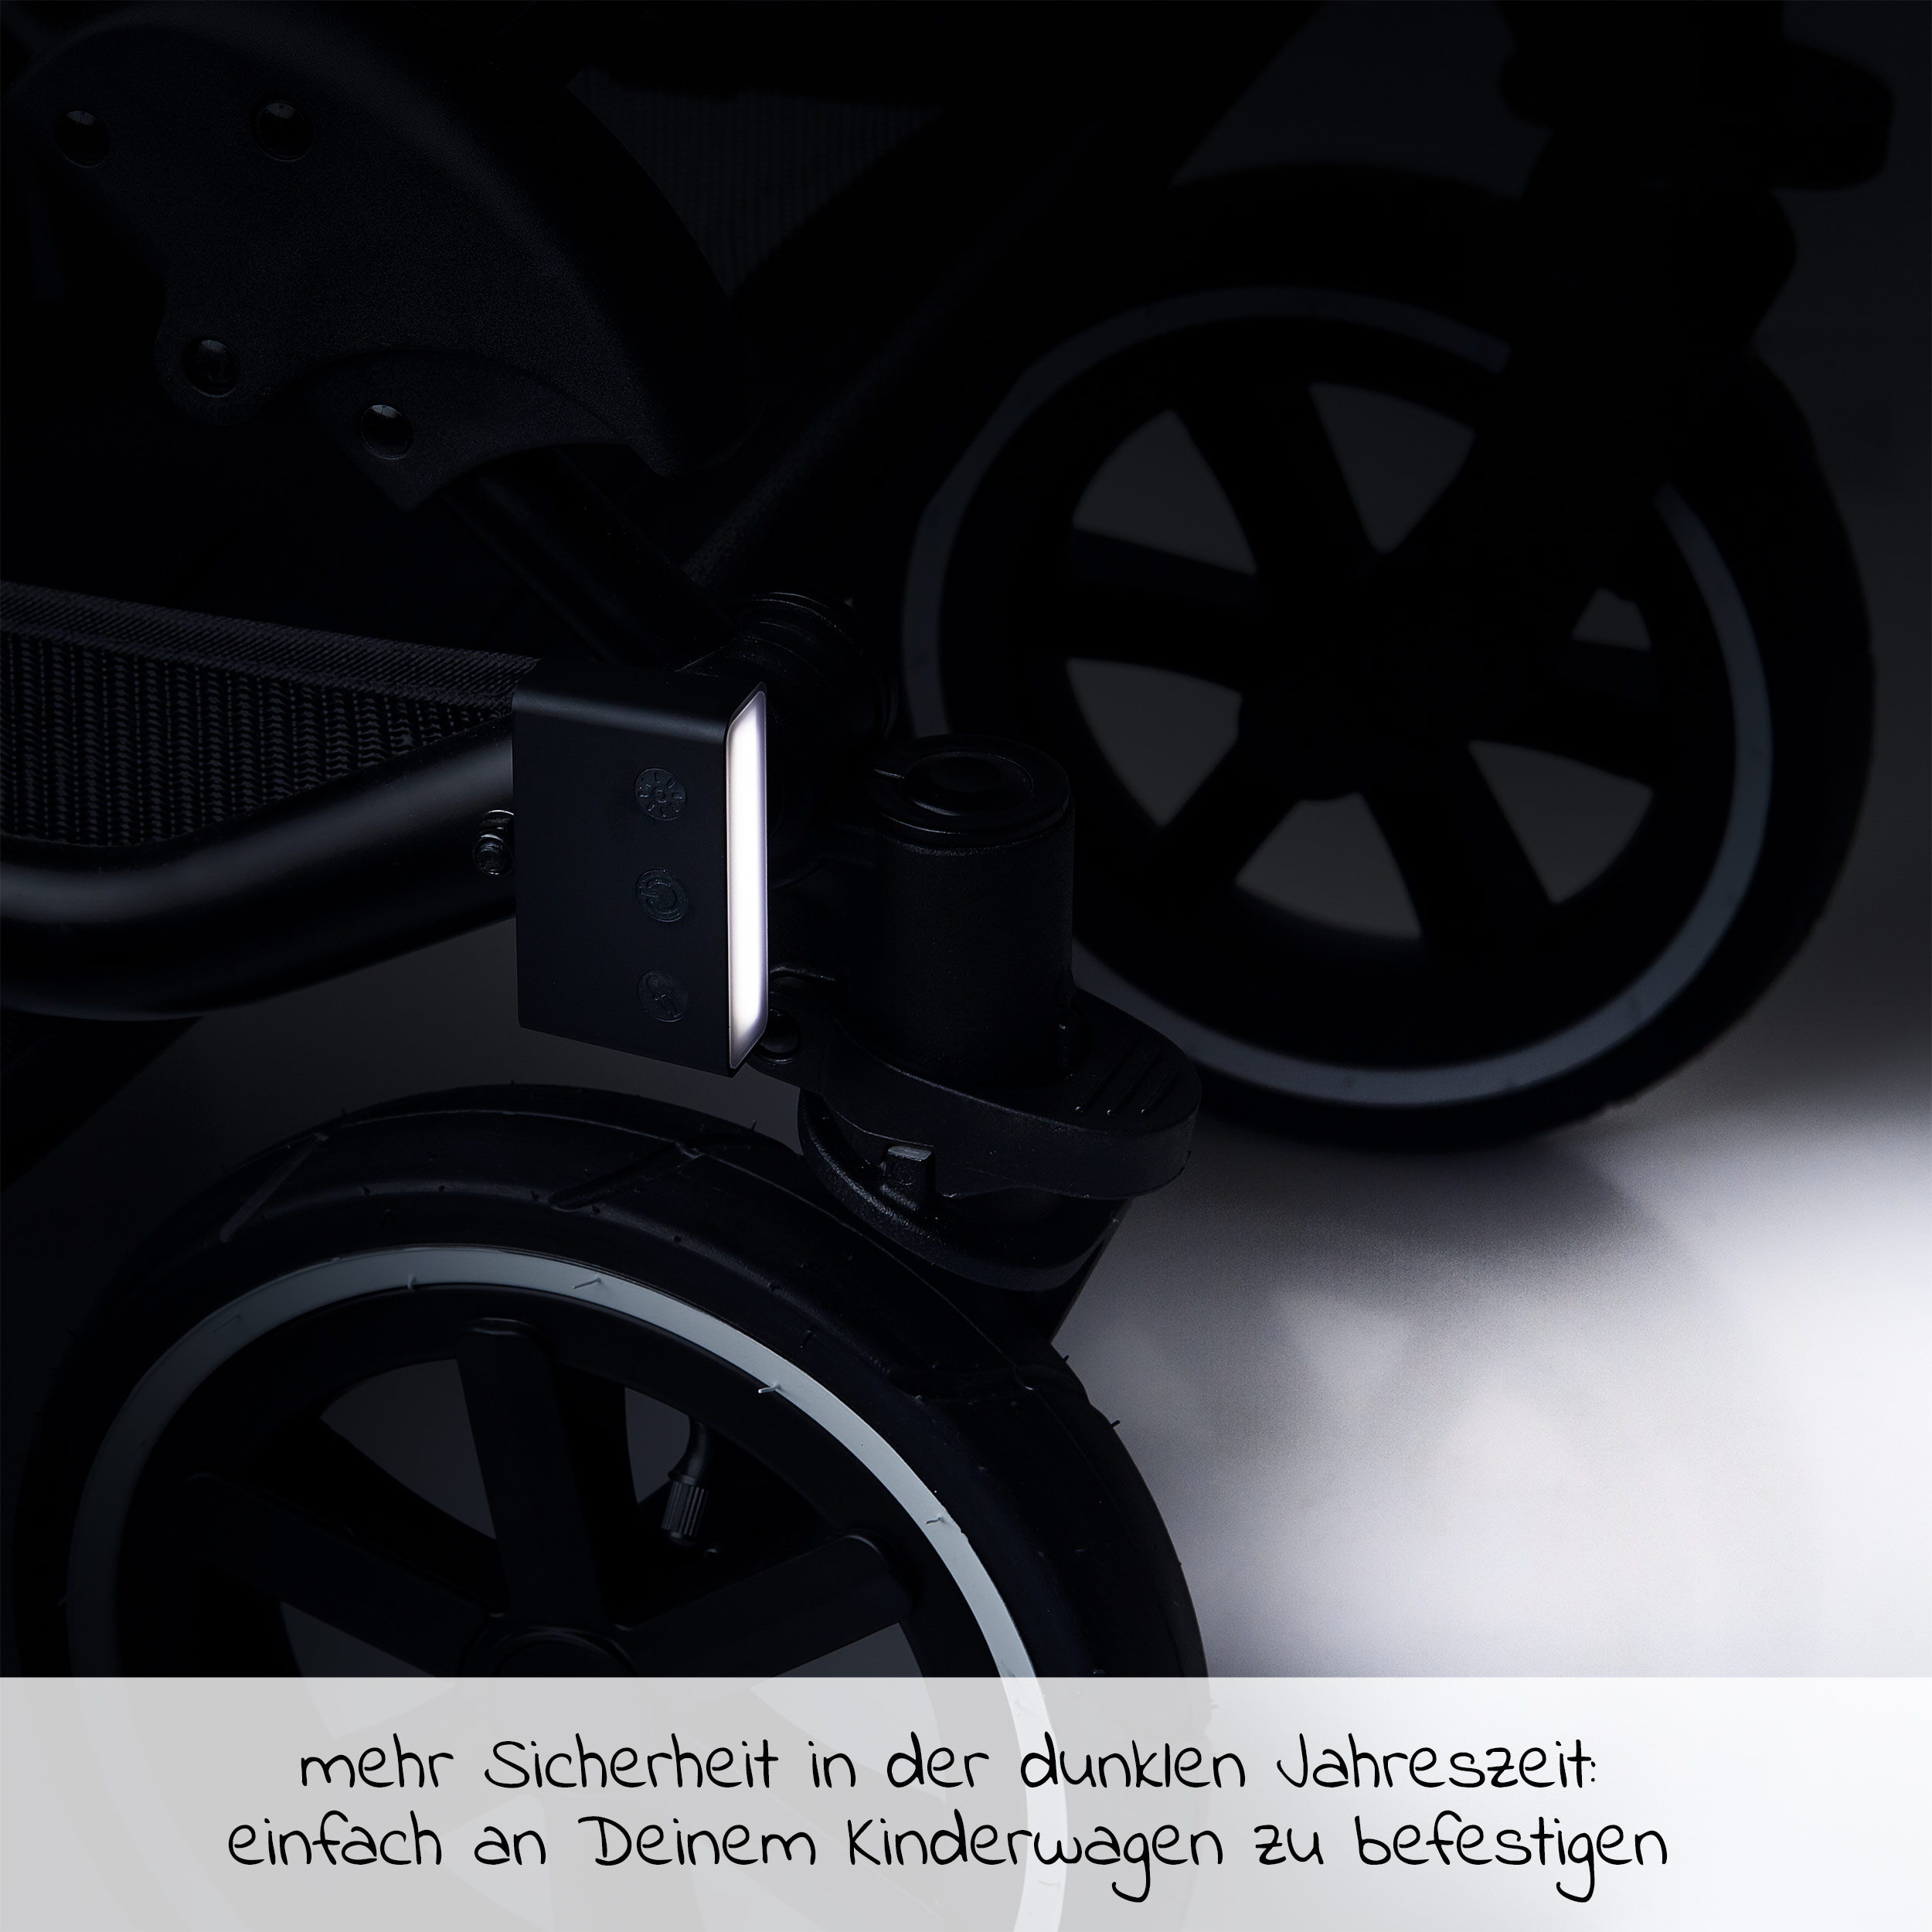 Helm Feitb wasserdichte 3 Modus-Einstellung Ultra Bright LED 2 x CR2032-Batterien passend LED Lampe Licht LED Sicherheitslicht LED Kinderwagen Set Silikon Leuchte Kinderwagen für alle Fahrräder 